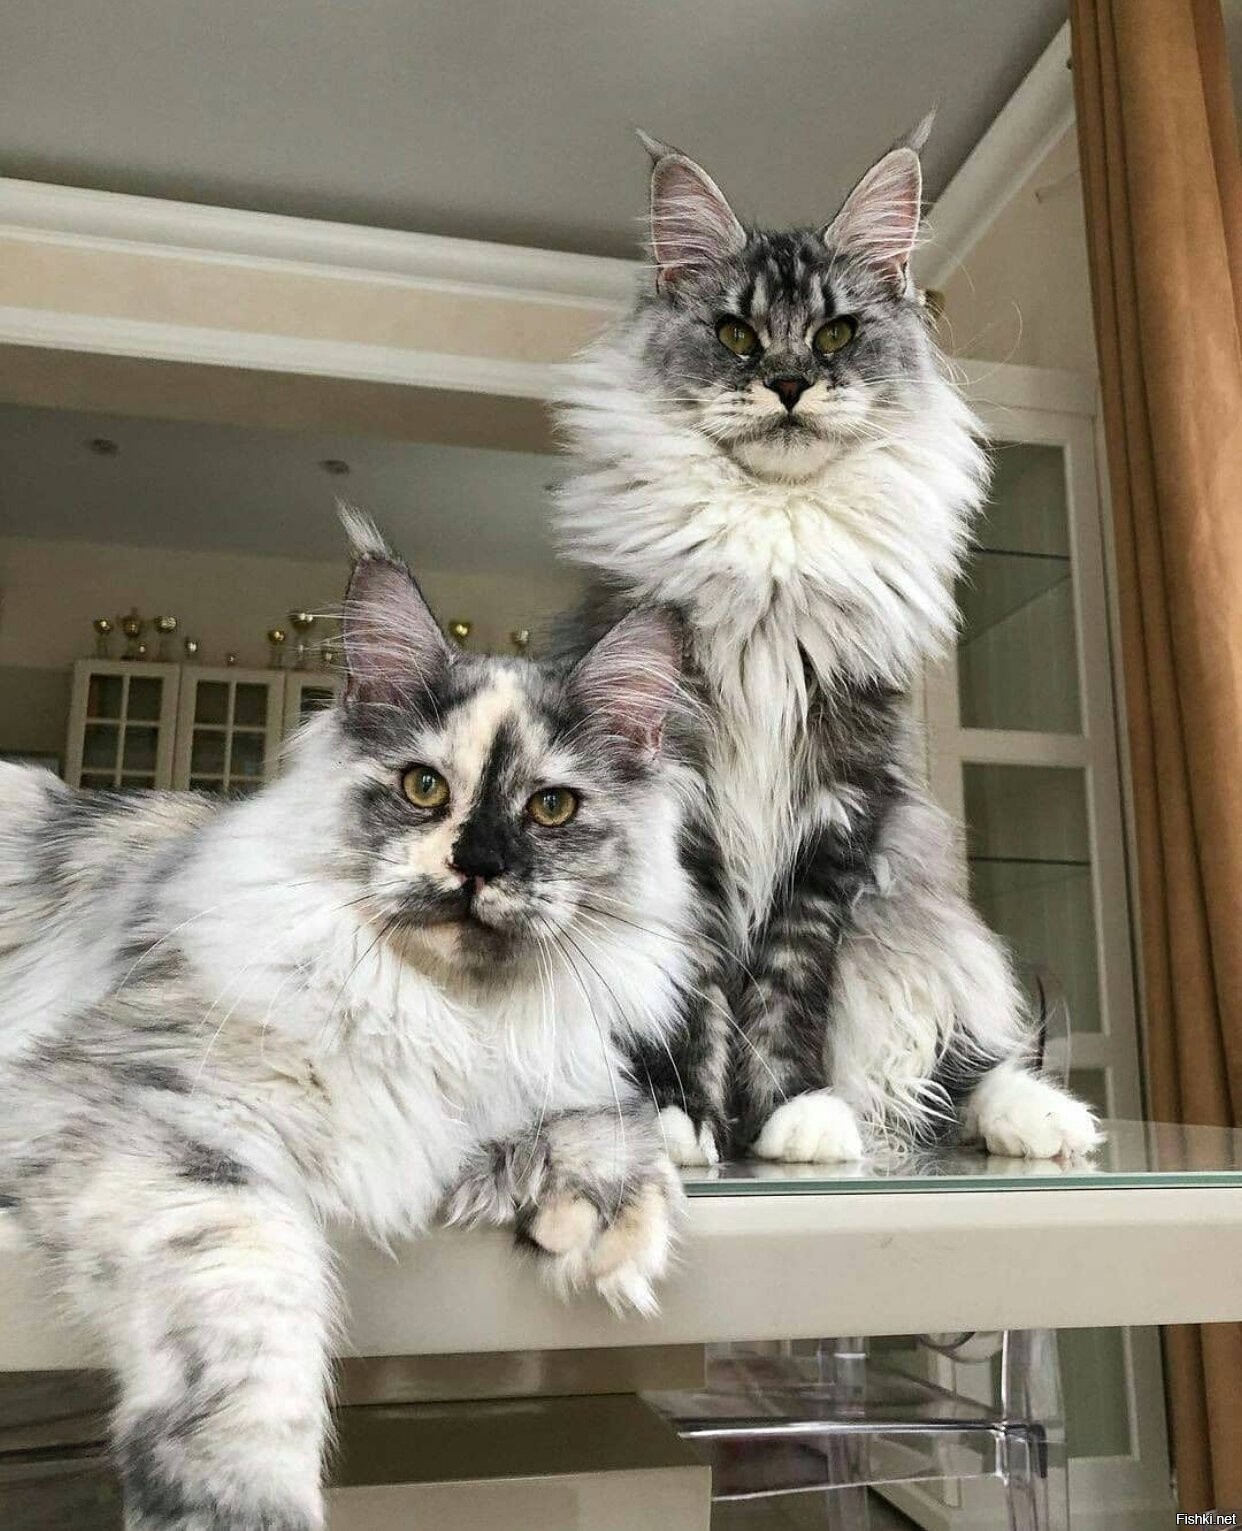 Nala and Thor, the Dynamic Feline Duo Redefining Cat Charisma.NgocChau